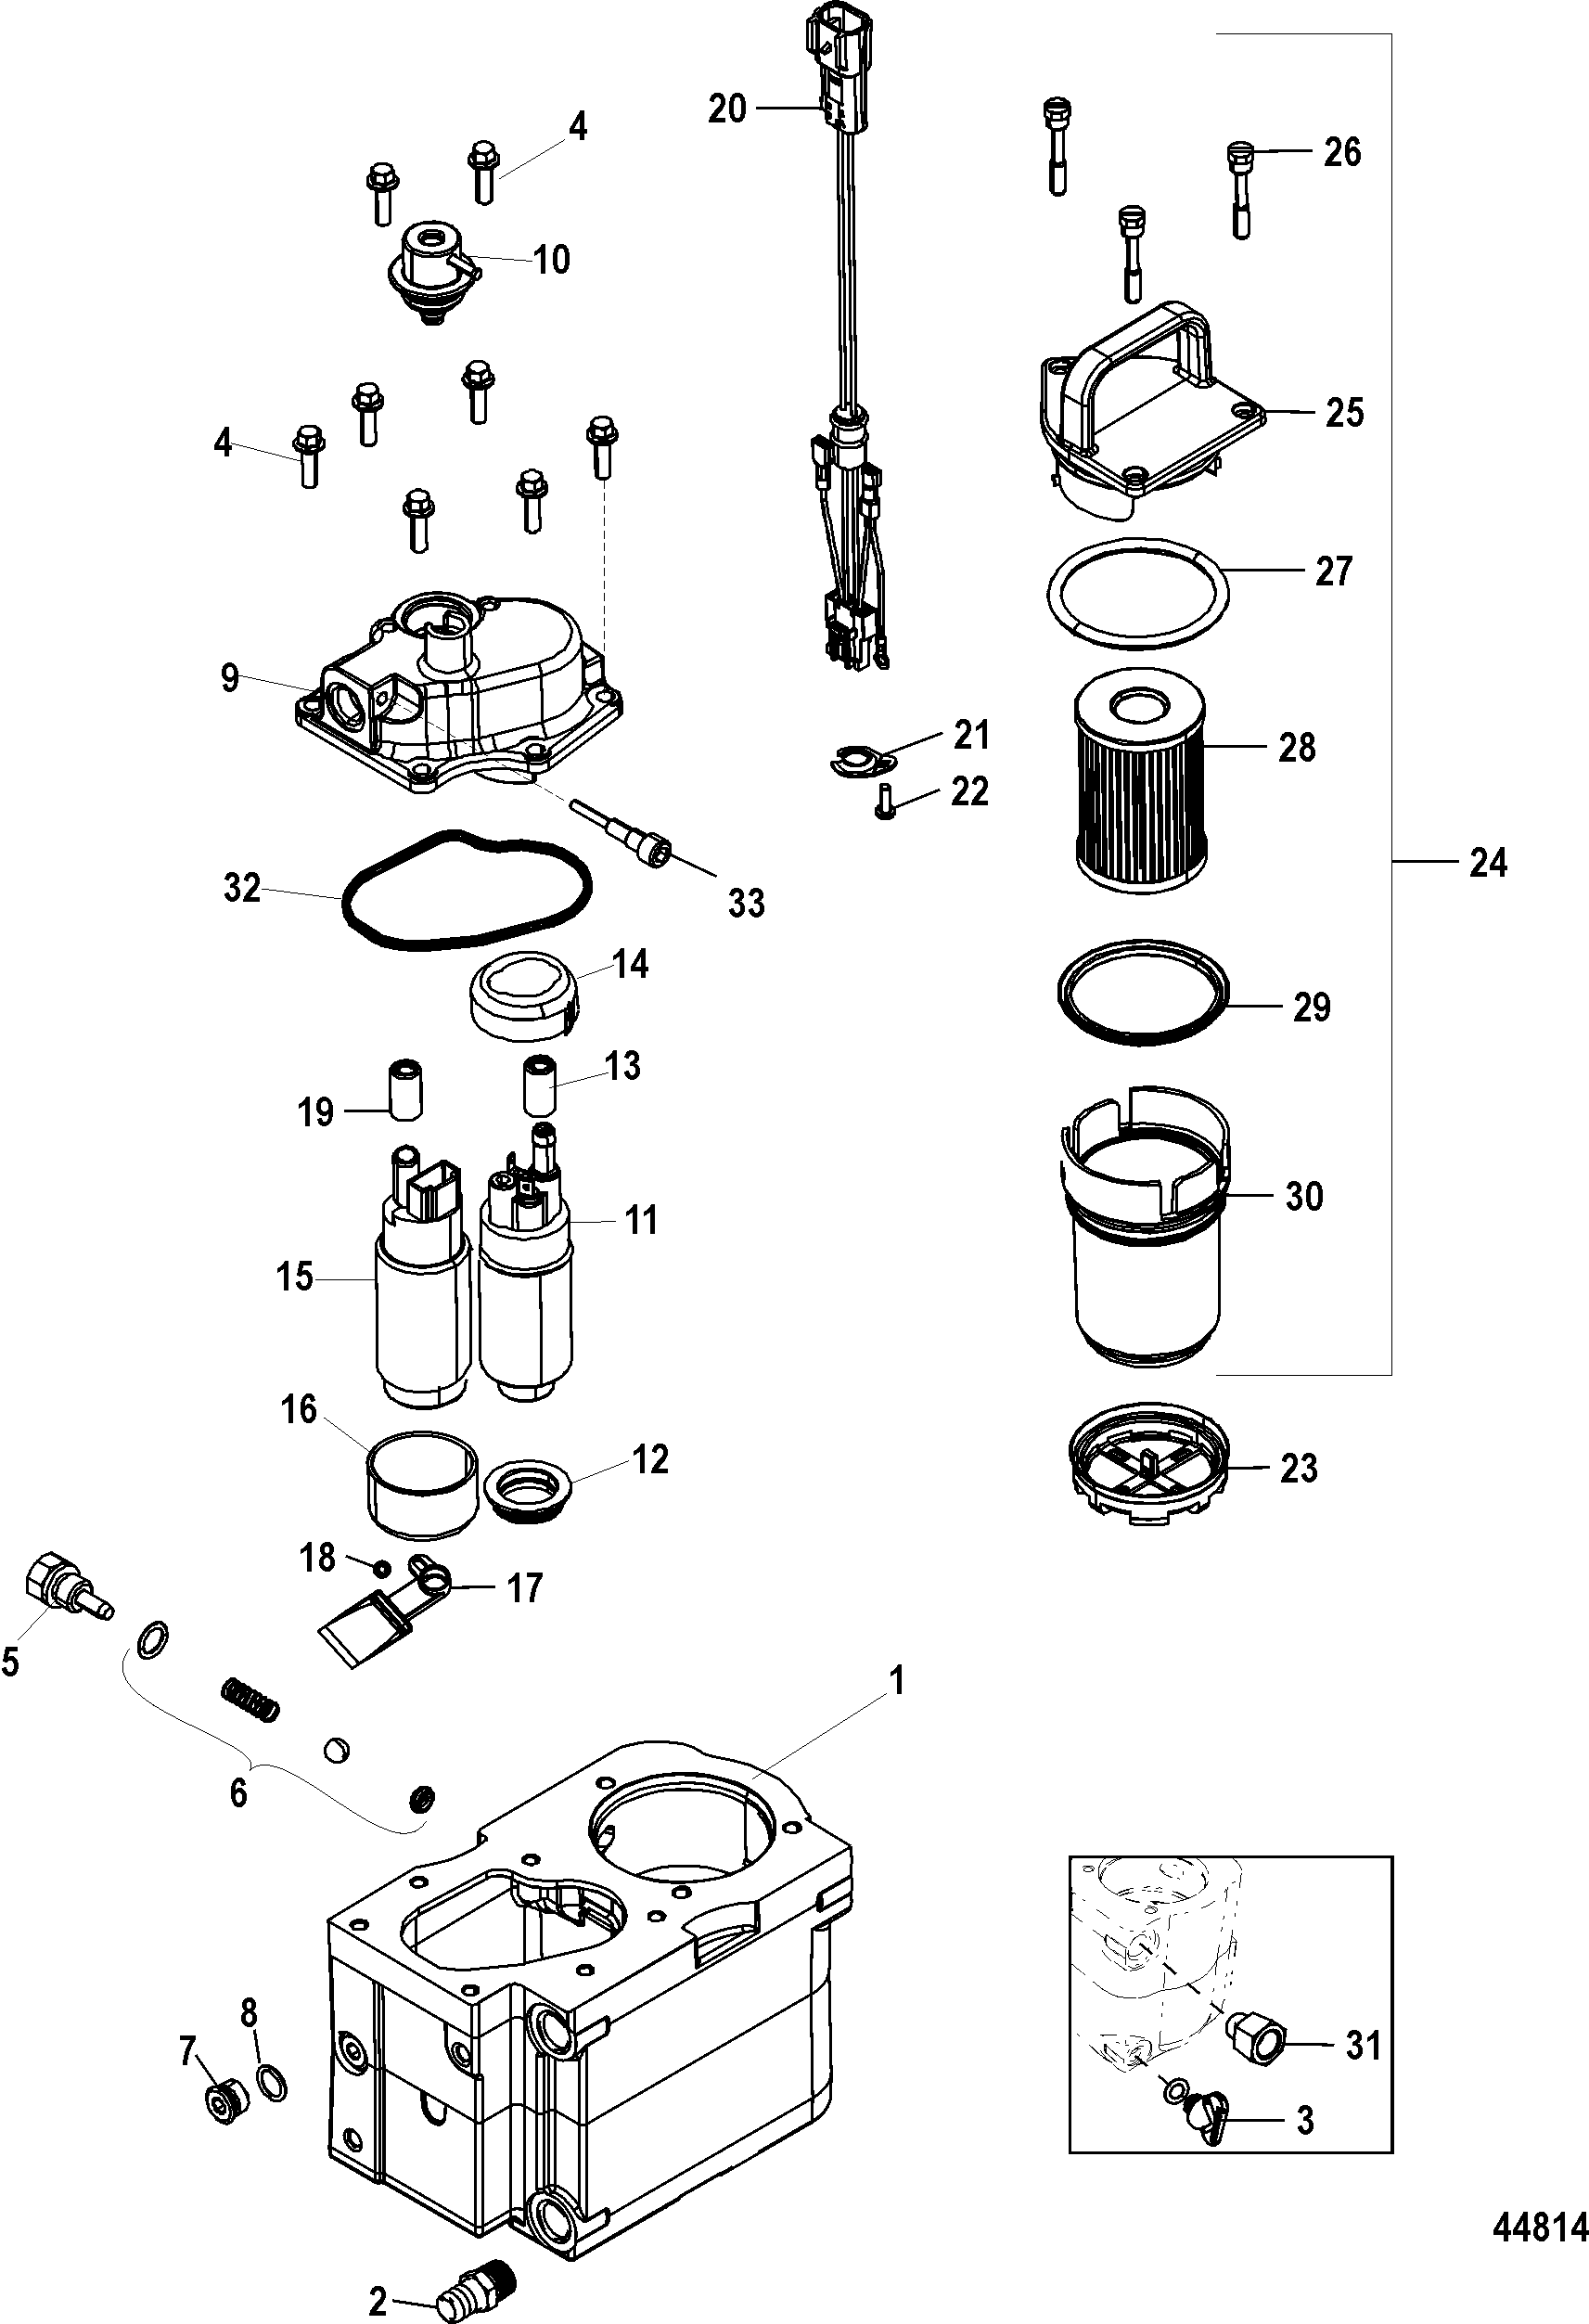 mercruiser496 mag wiring diagram